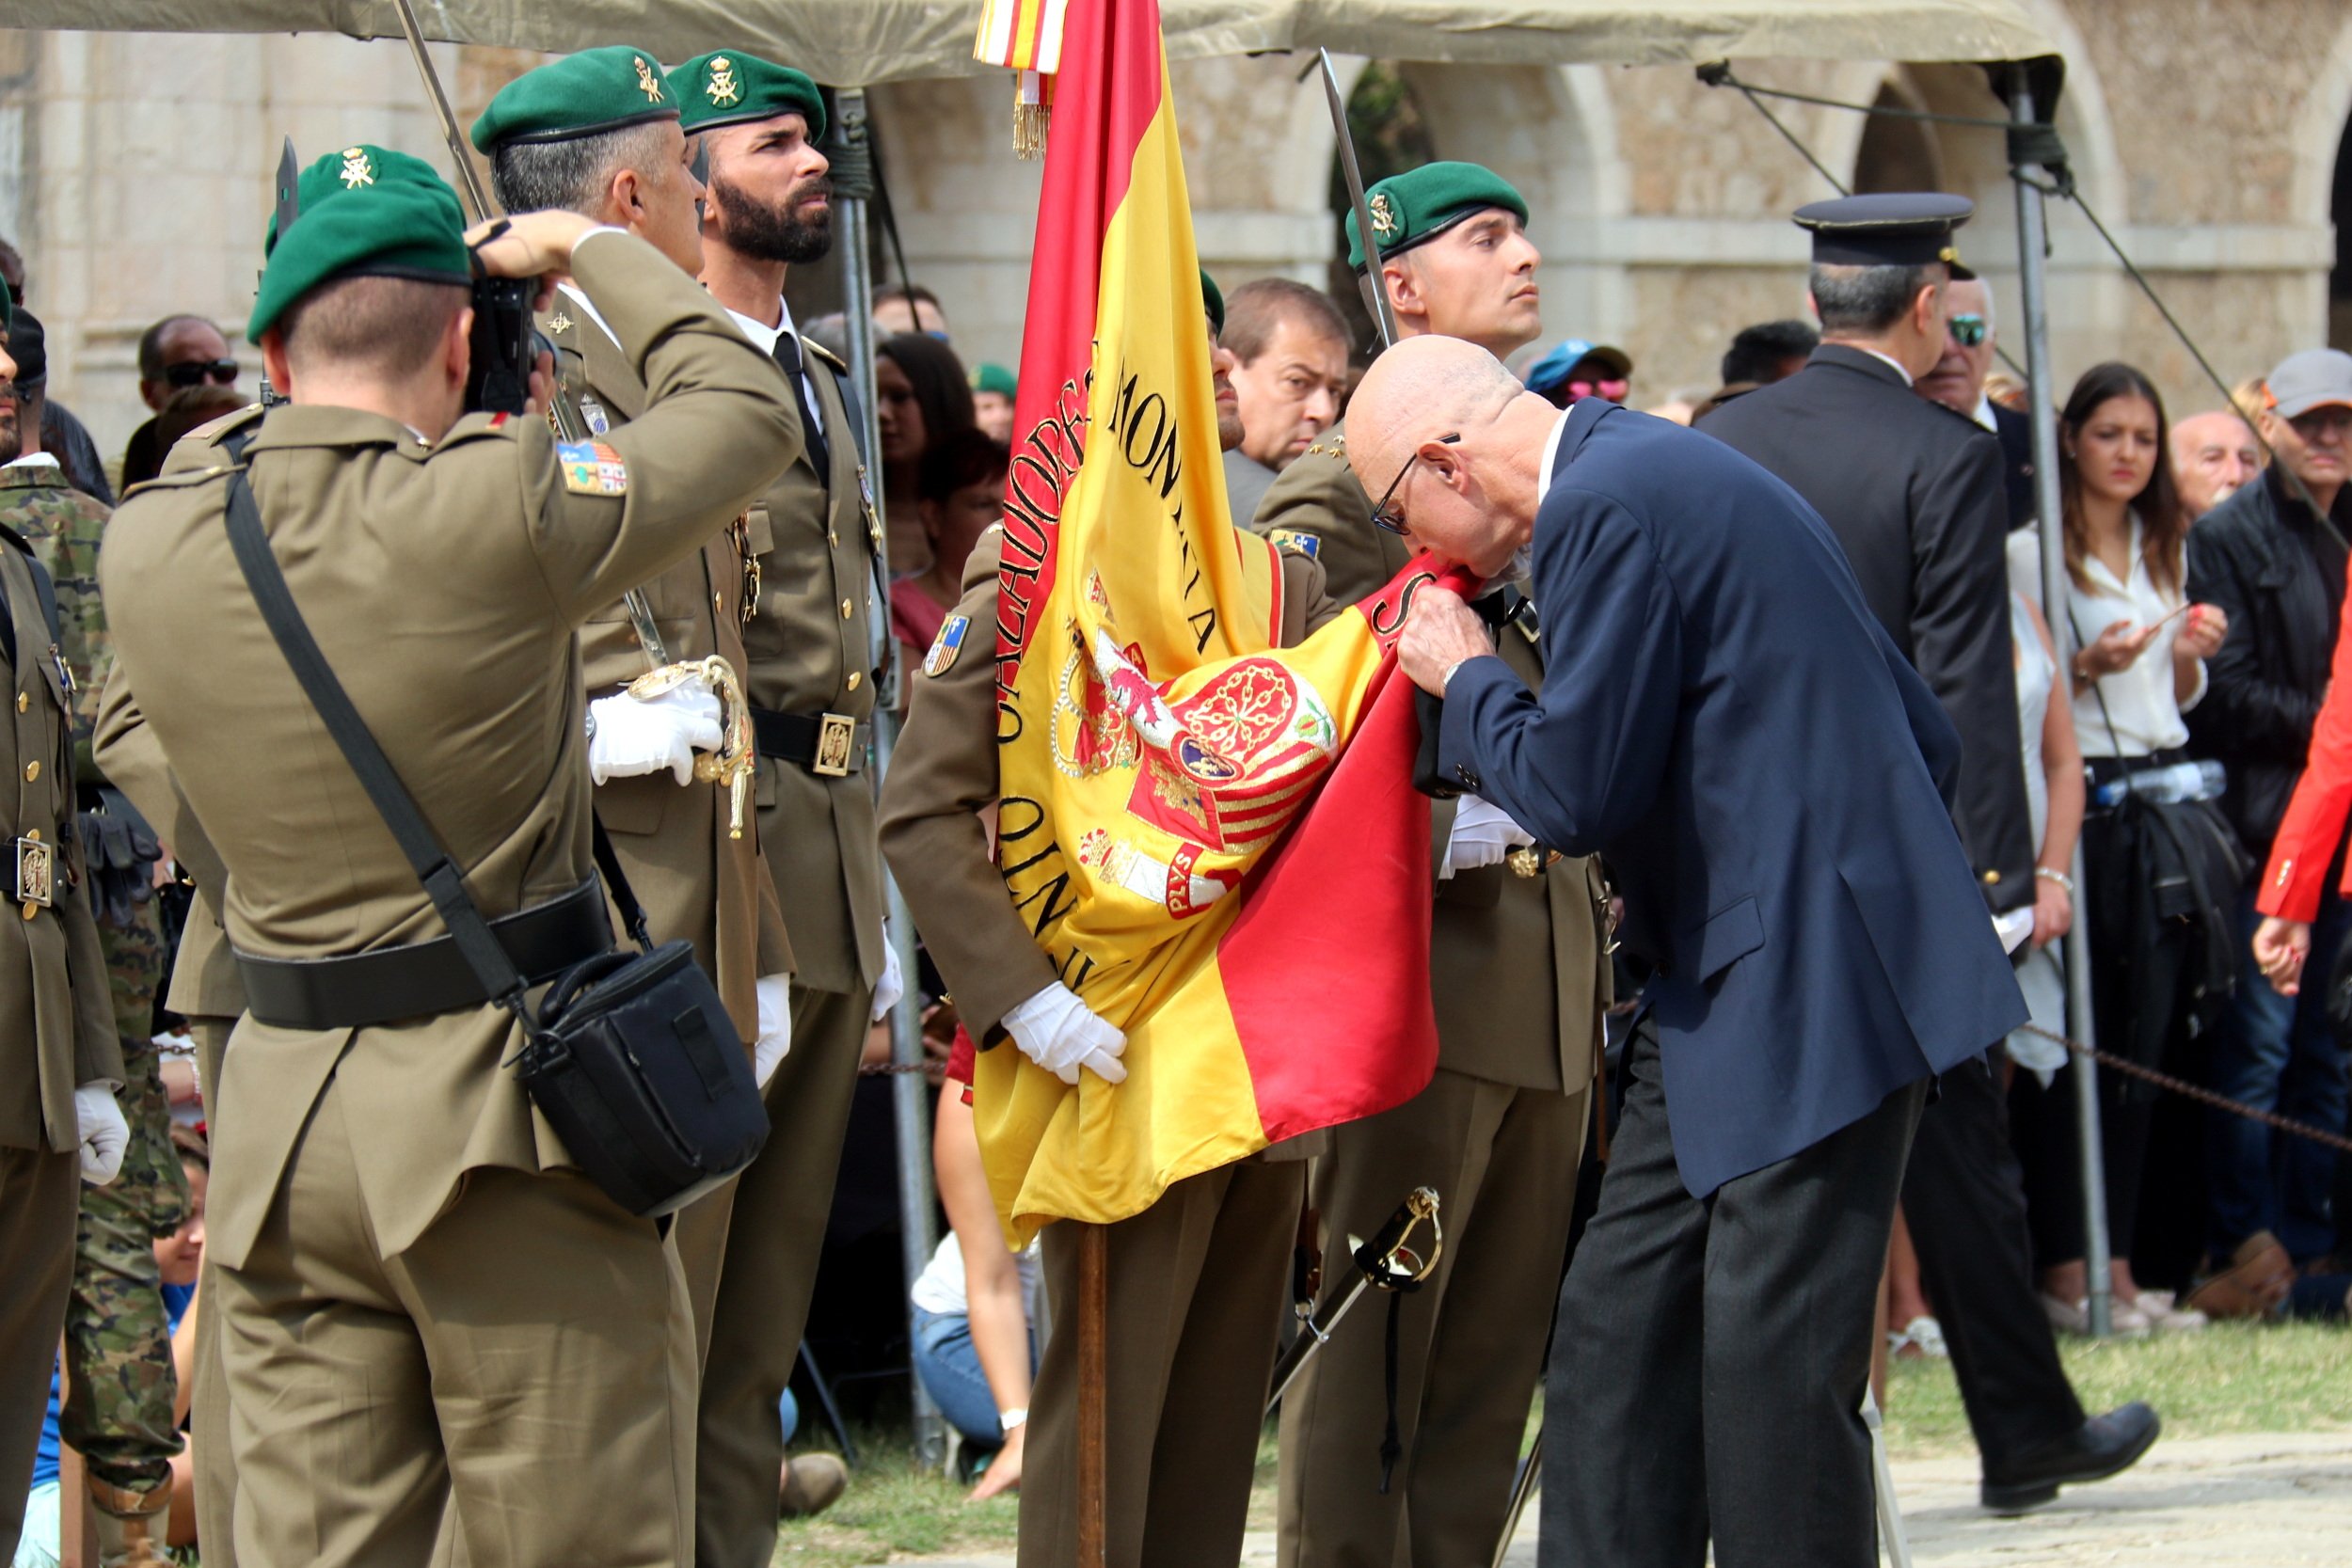 L'Exèrcit organitza una jura civil de bandera al castell de Sant Ferran de Figueres 5 anys després